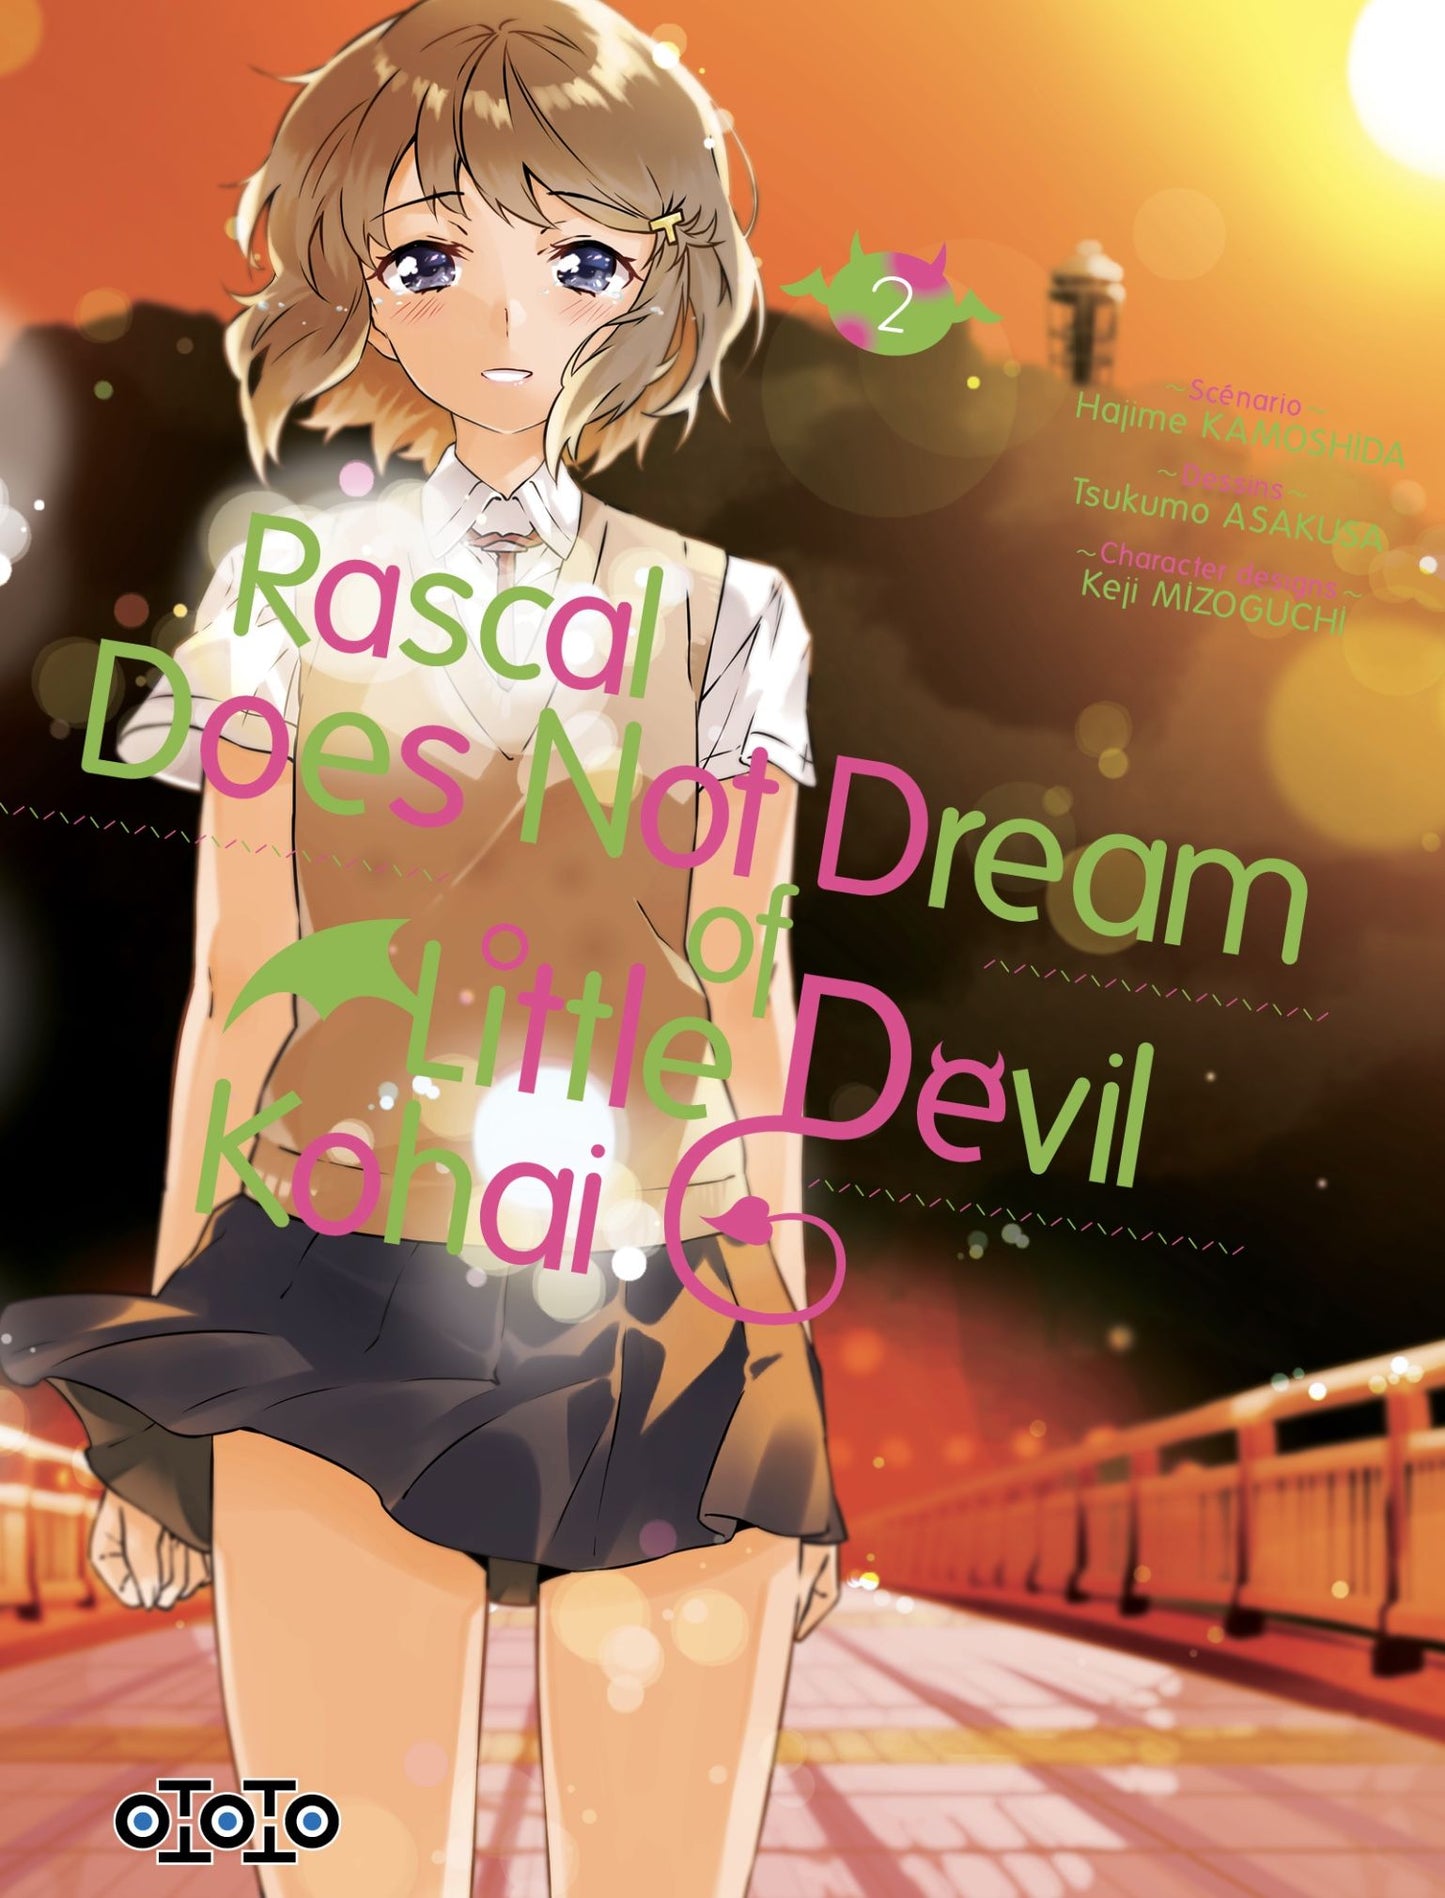 Rascal Does Not Dream of Little Devil Kohai T02